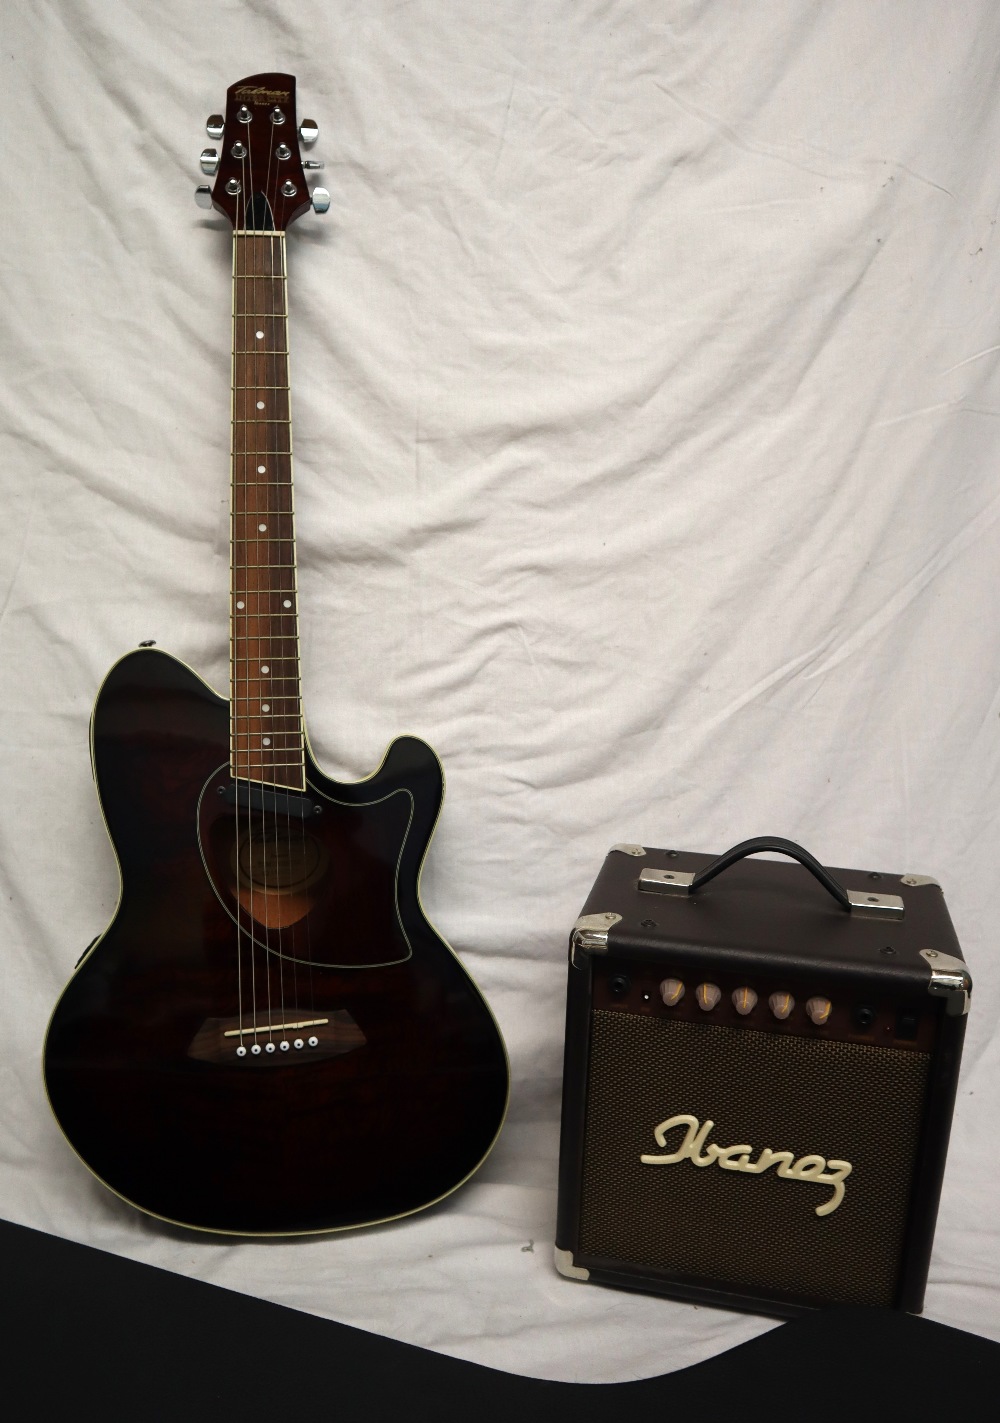 A Talman Inter City Ibanez six string guitar, Model No TCM50VBS 1203, No.